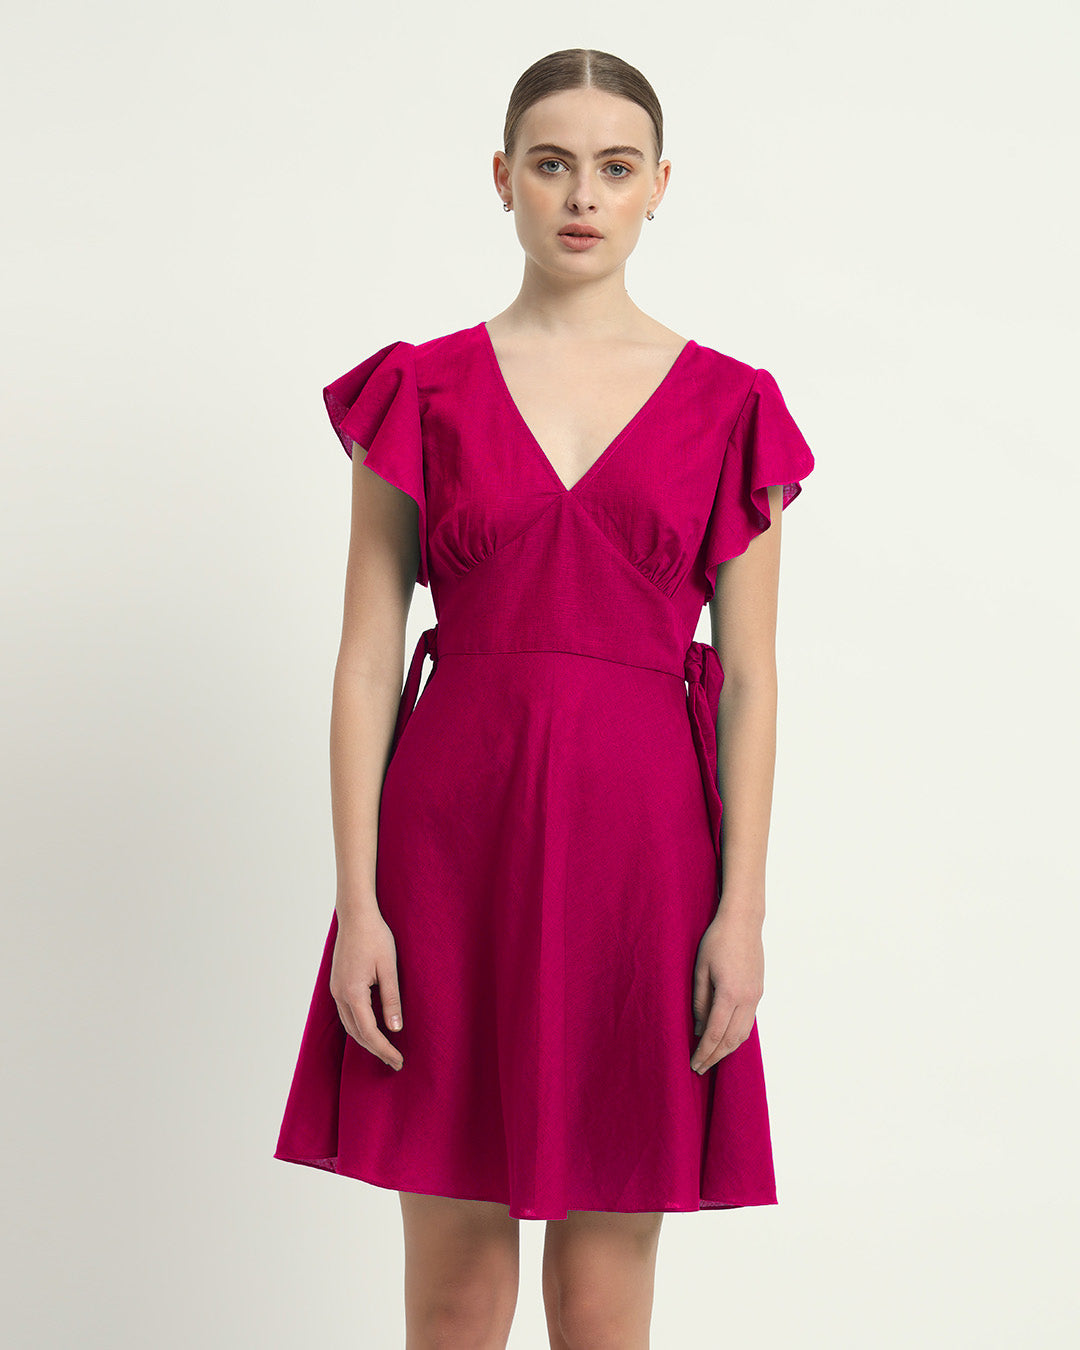 The Berry Fairlie Cotton Dress